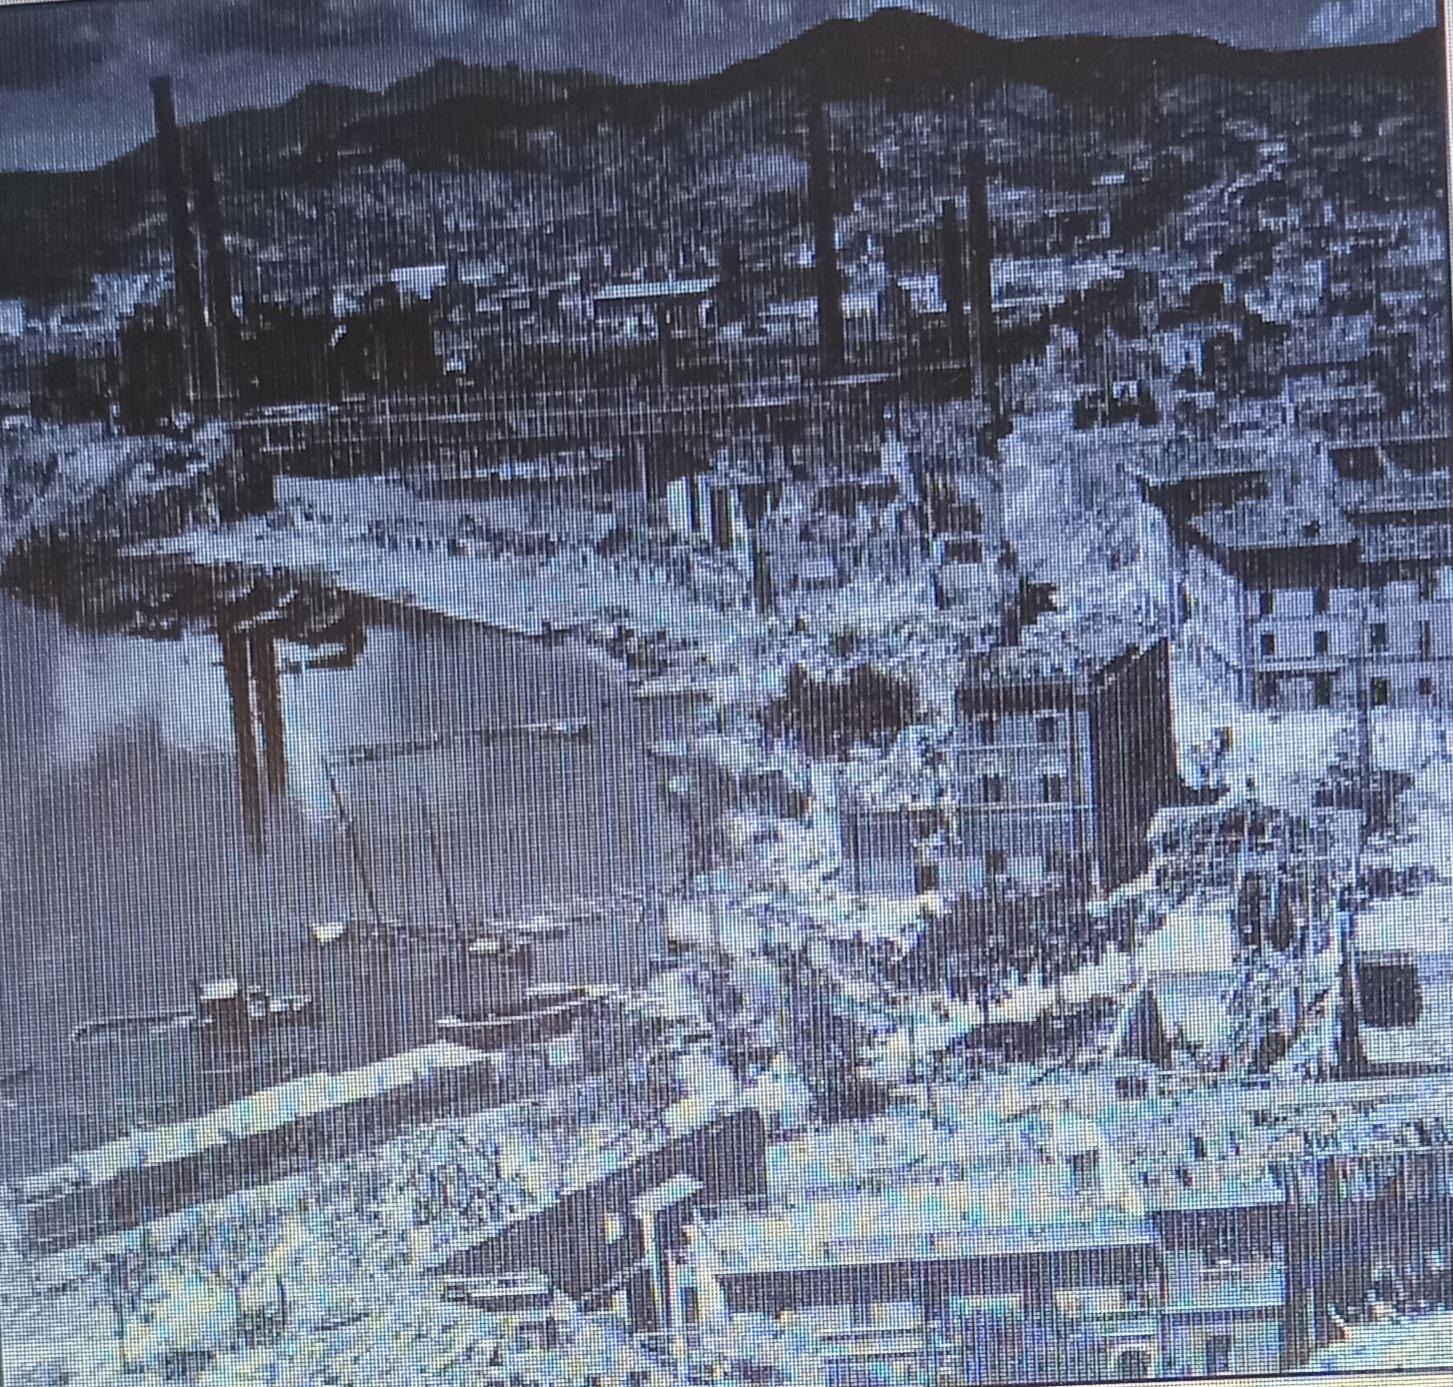 Bombardamento della zona del Ponticello durante la seconda guerra mondiale